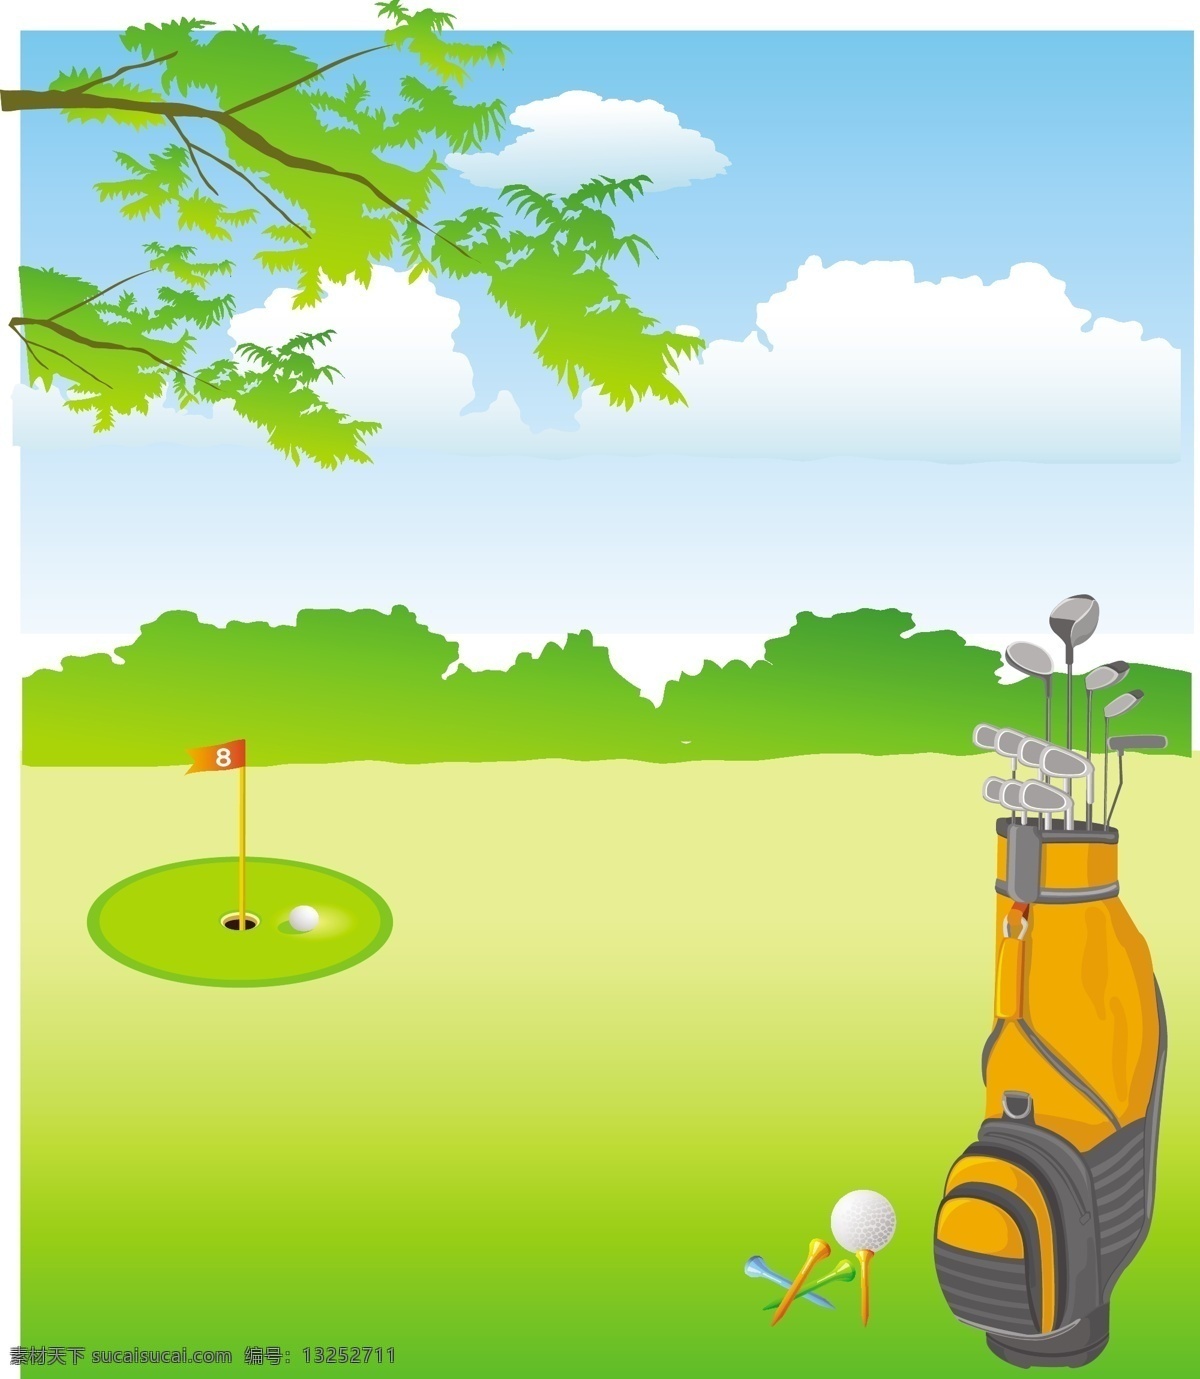 高尔夫向量 高尔夫球 矢量艺术 矢量 免费 向量 剪贴 画 高尔夫 俱乐部 插画 剪影 标志 自由 球杆 座 国旗 矢量图 其他矢量图